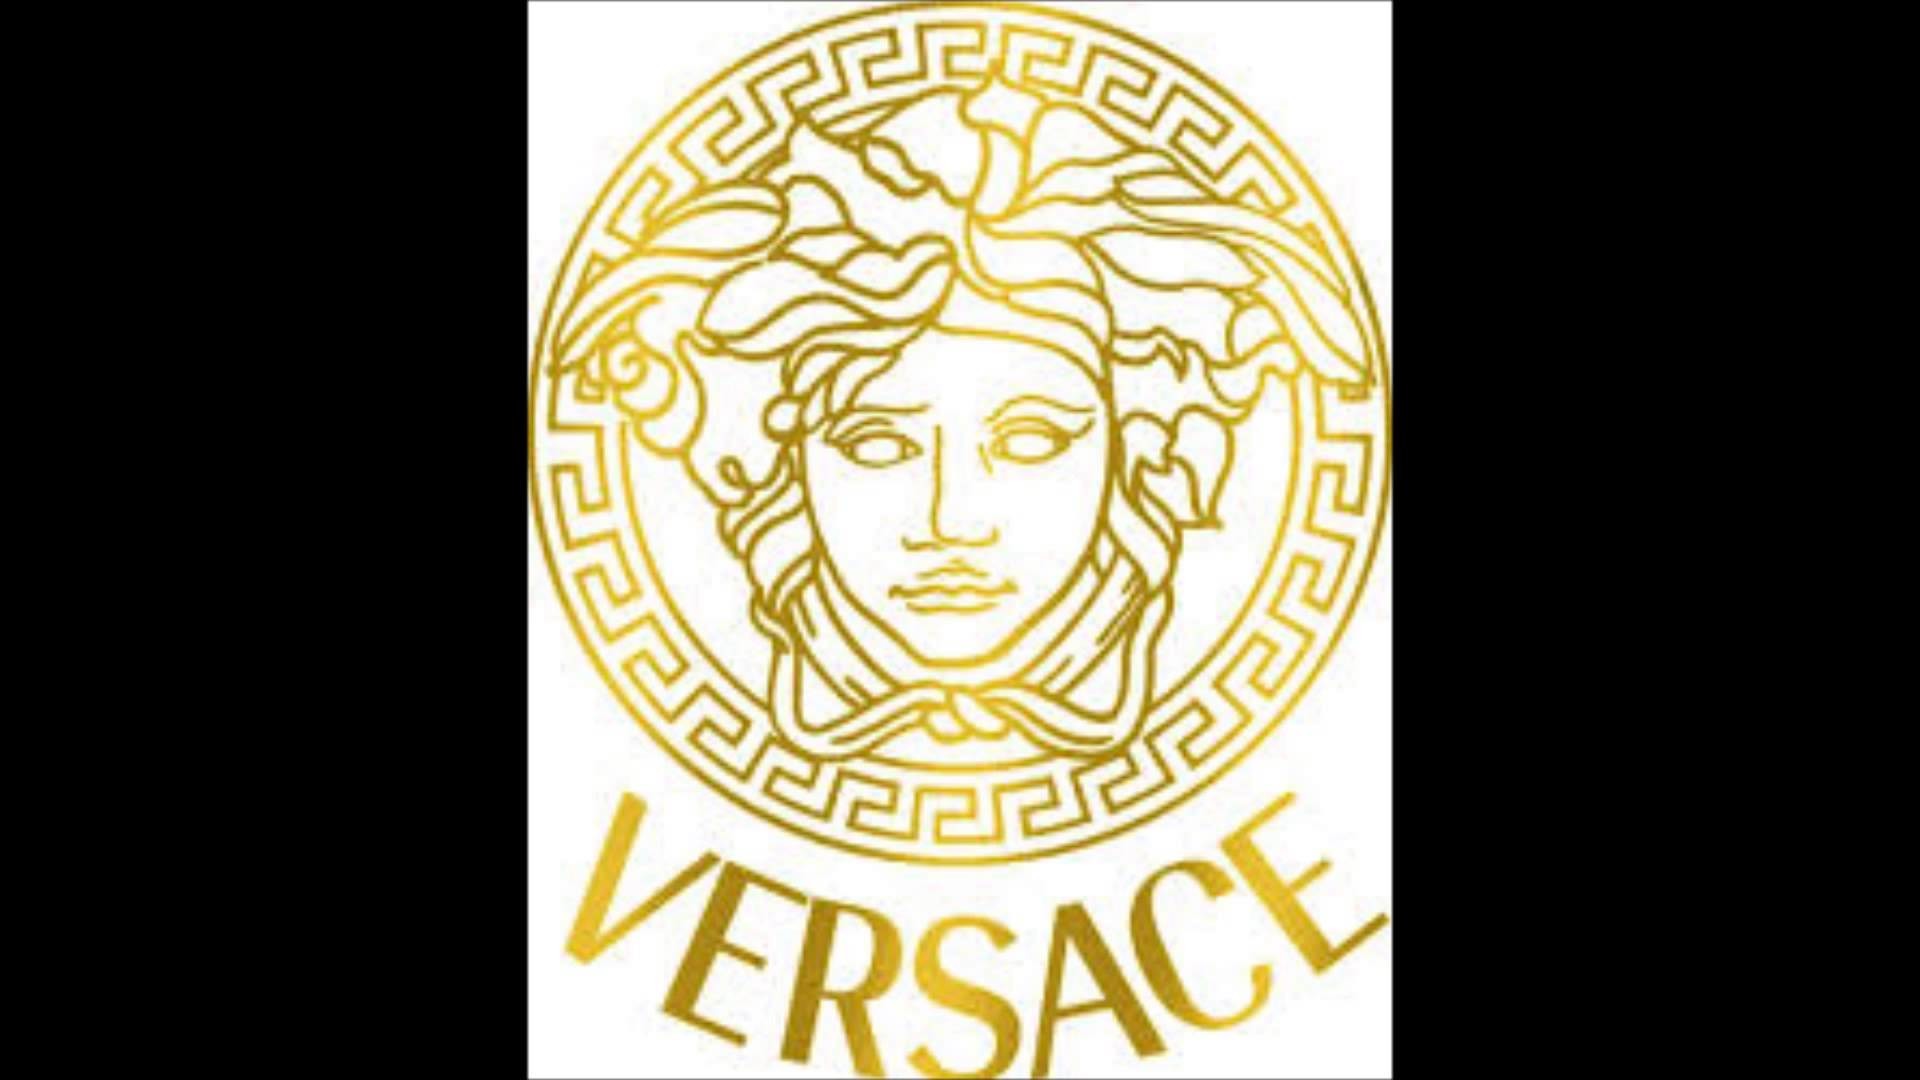 1920x1080 Versace Hay Que Reir nuevo